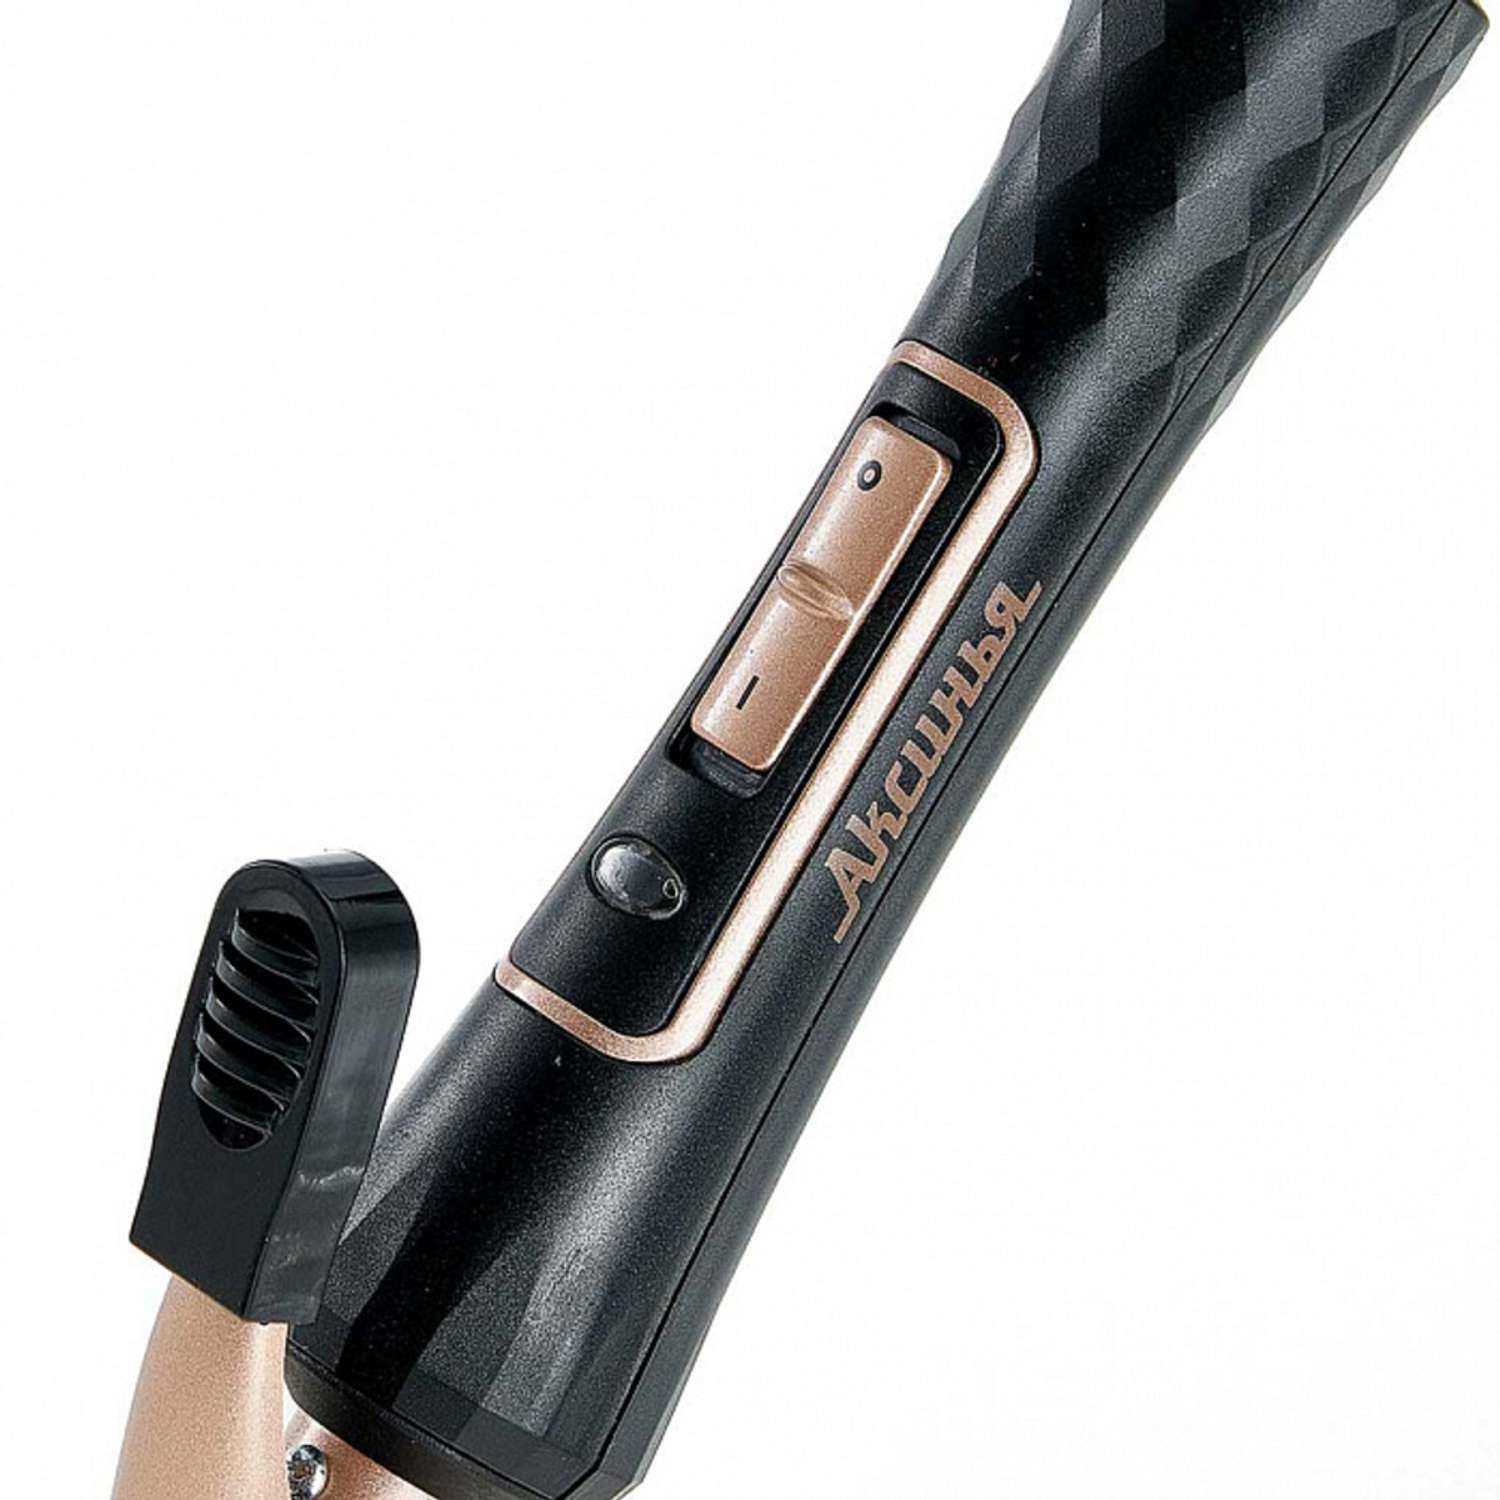 Стайлер для завивки волос Аксинья КС-804 черный с золотым керамическое покрытие d 19 мм 35 Вт - фото 3